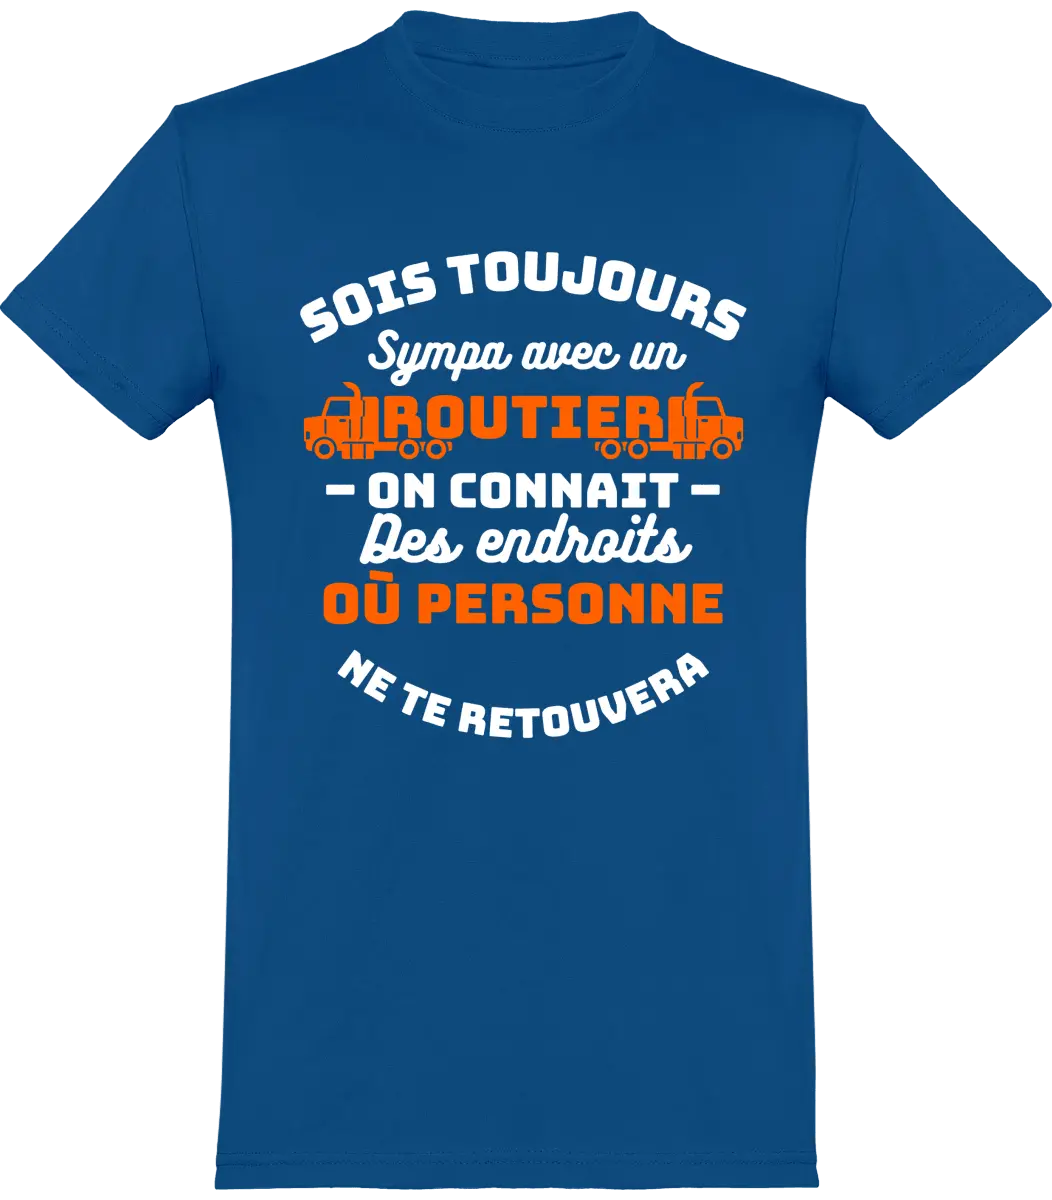 T-shirt Routier "Soit toujours sympa avec un routier on connait des endroits où personne ne te retrouvera" - French Humour